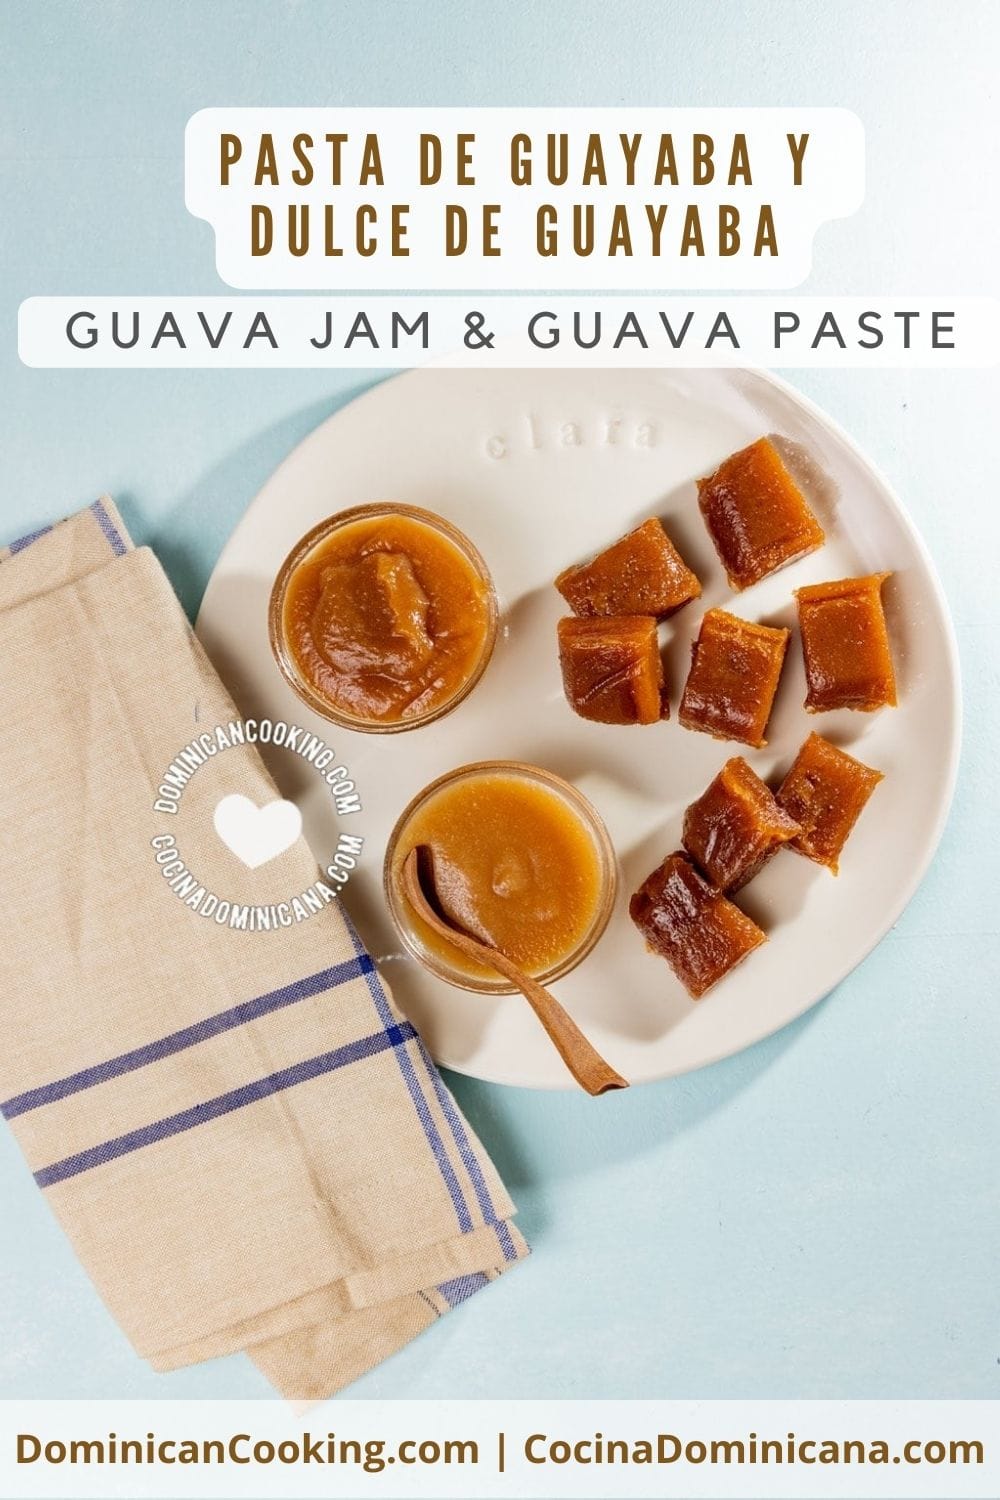 Guava jam and guava paste recipe.